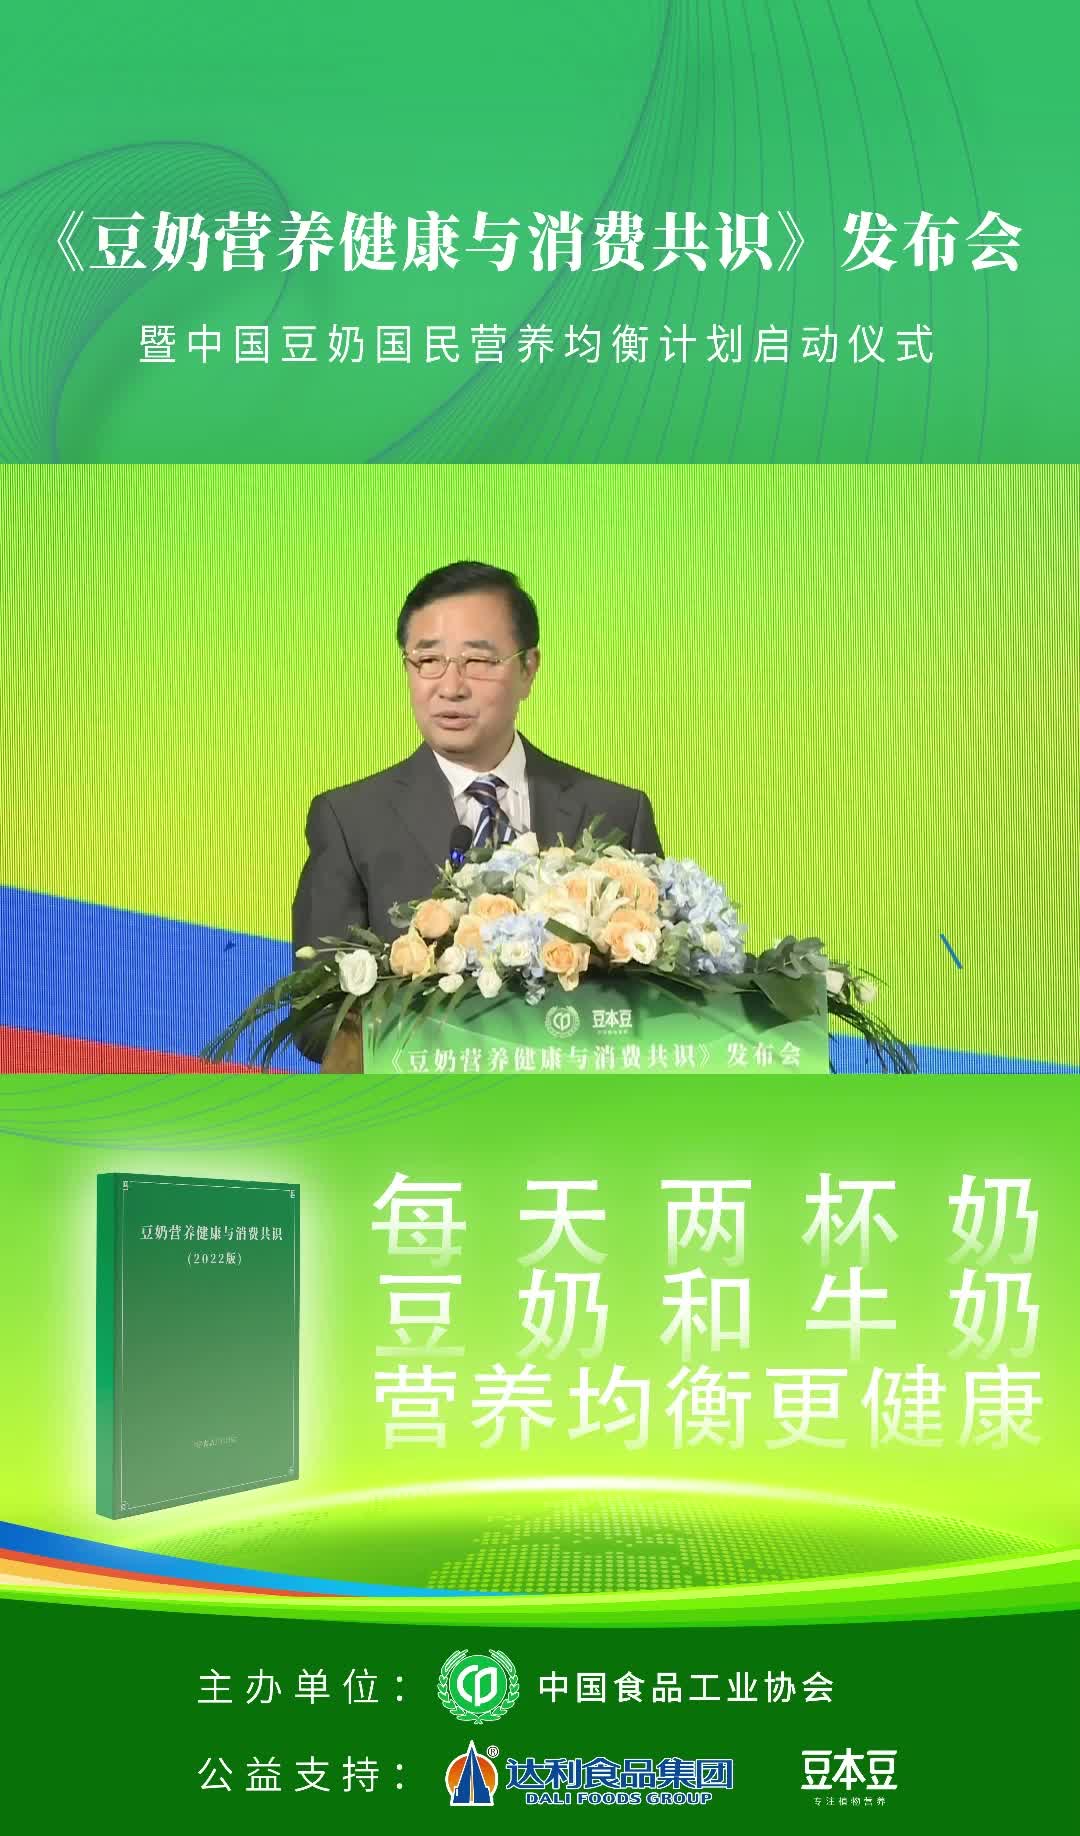 中国保健协会副理事长兼秘书长张志强：“《中国居民膳食指南》提出了大豆蛋白和大豆制品是我们东方膳食模式